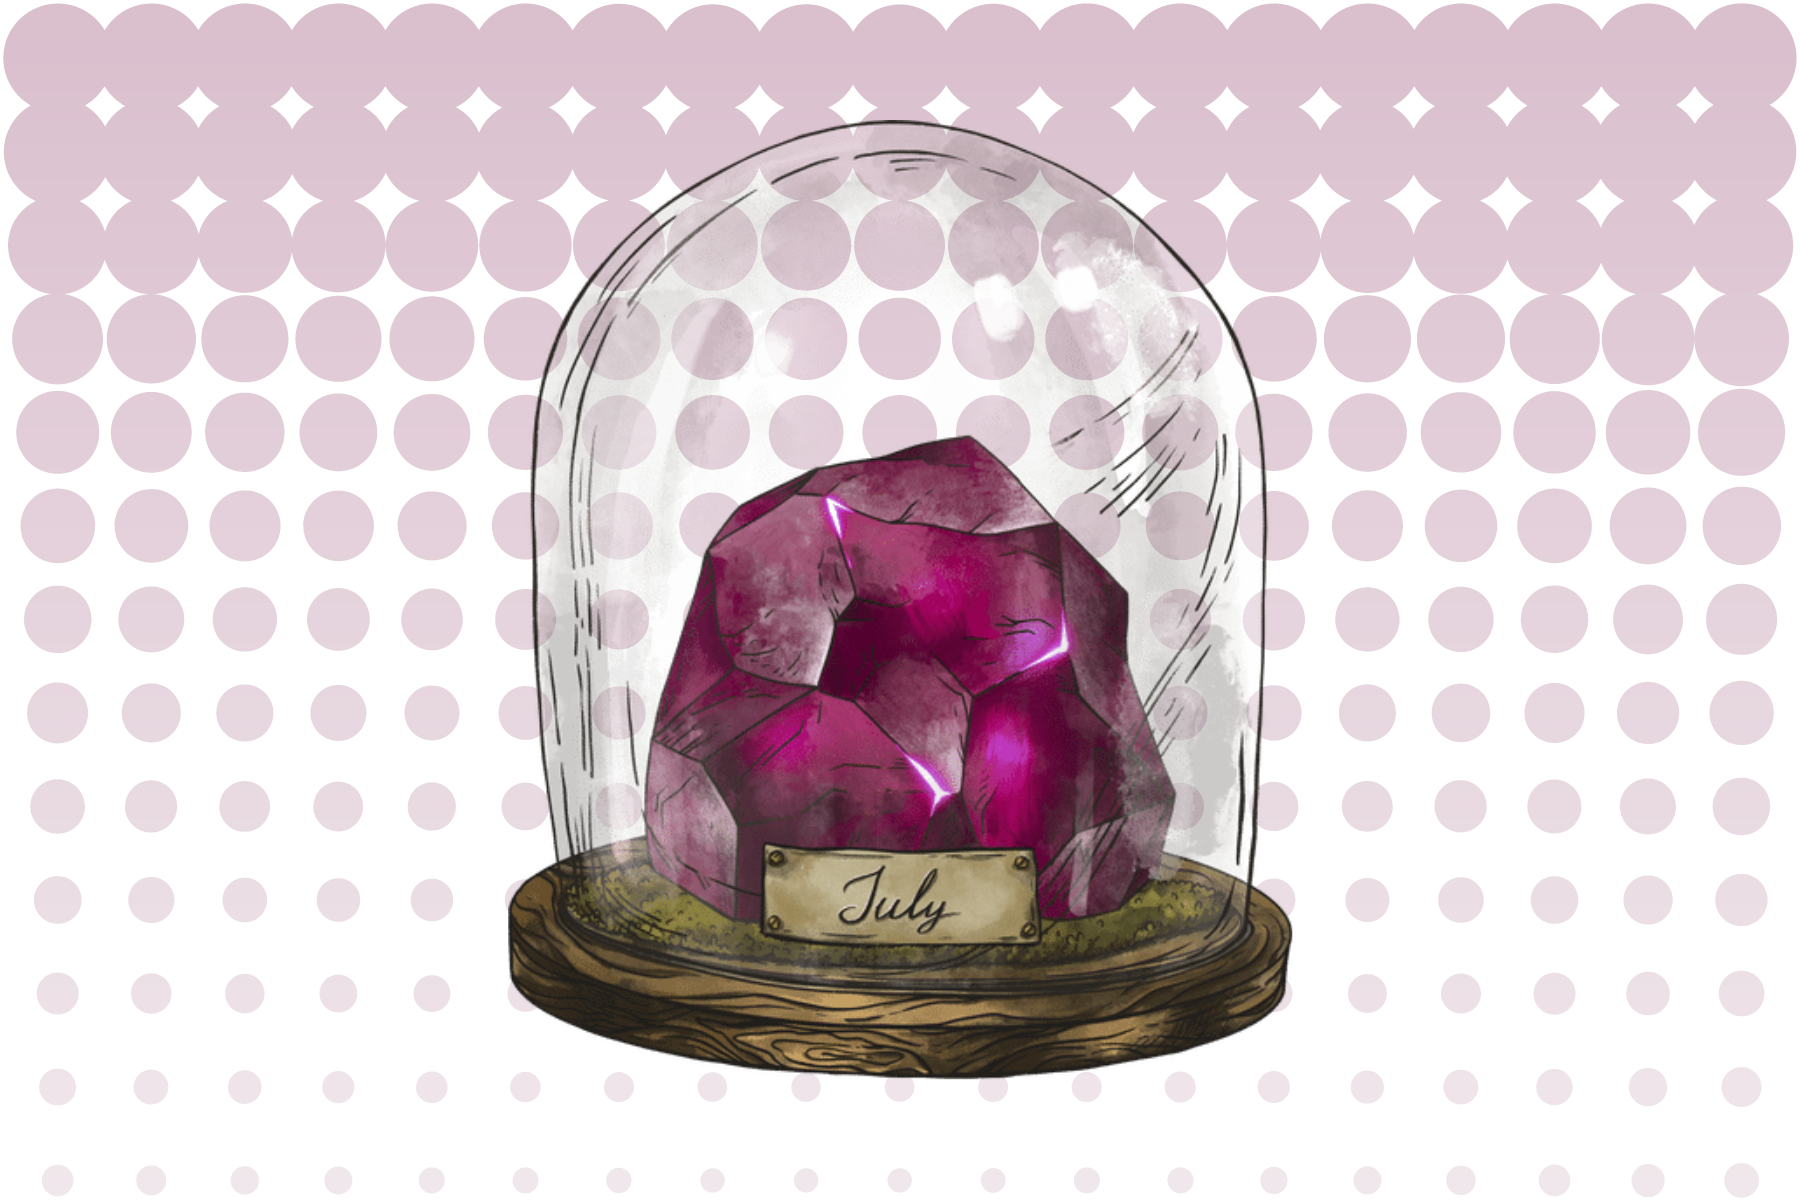 Ruby stone inside a glass jar